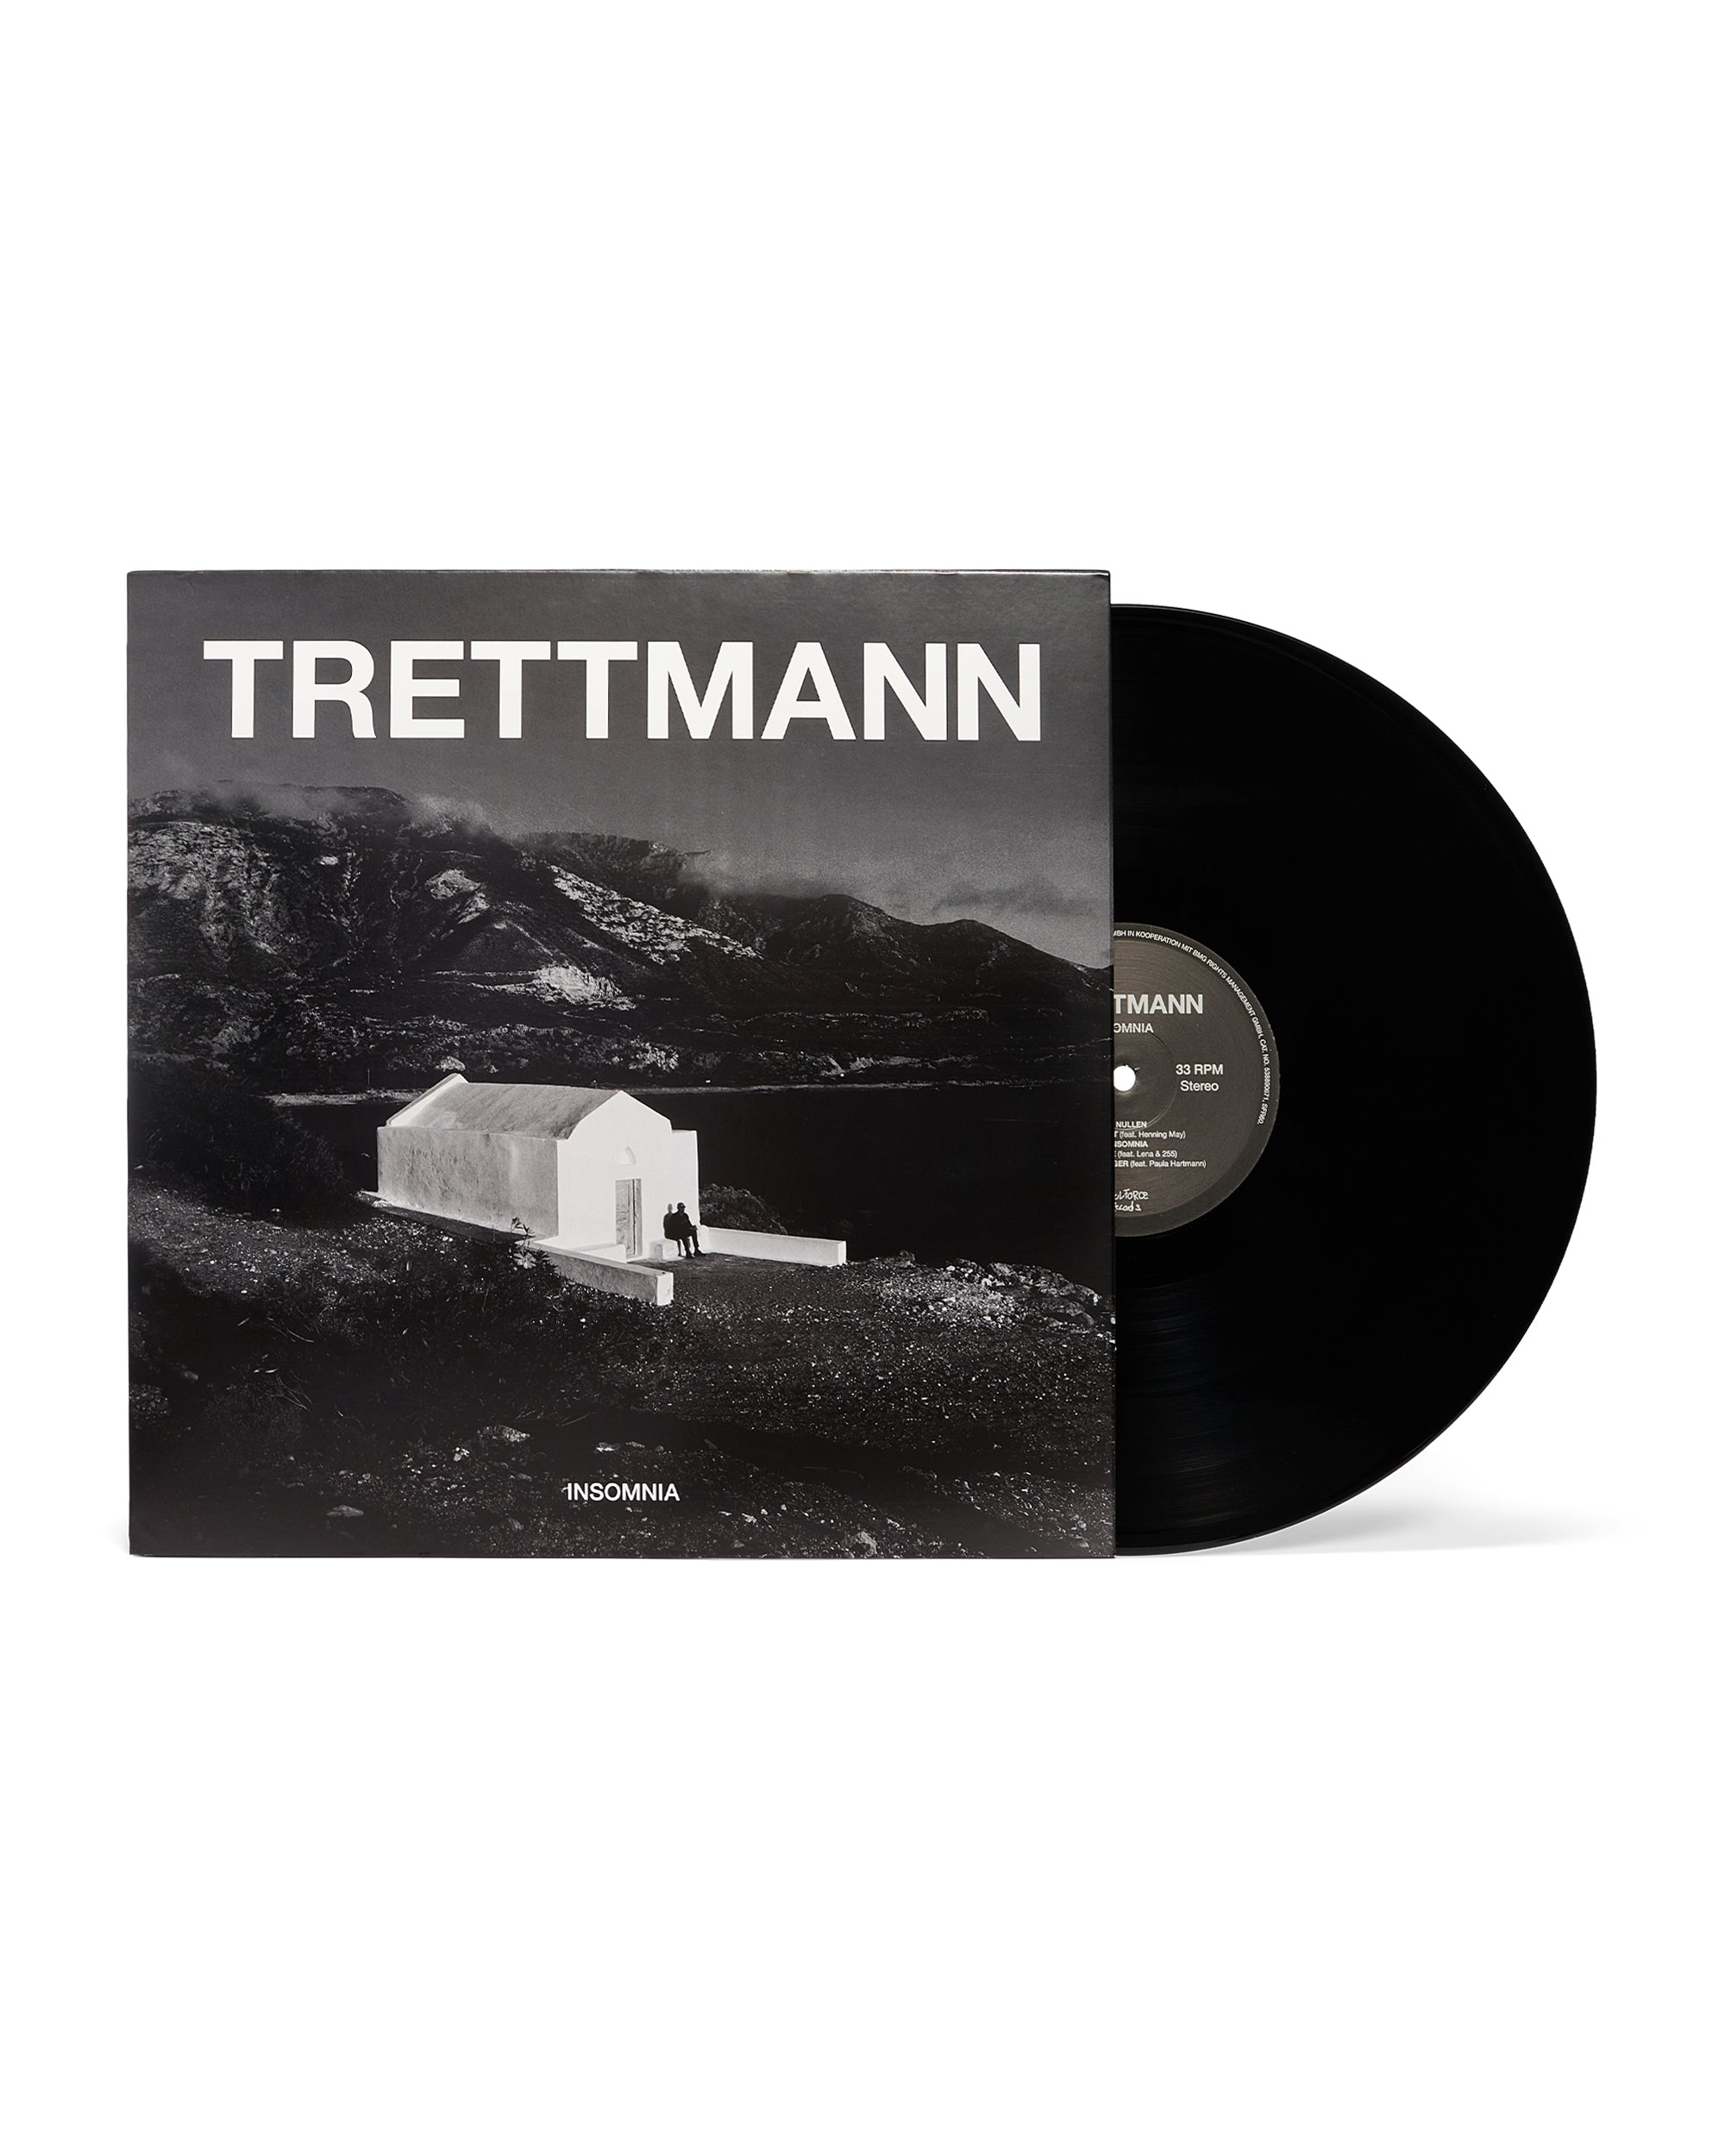 TRETTMANN – "INSOMNIA" (ALBUM)